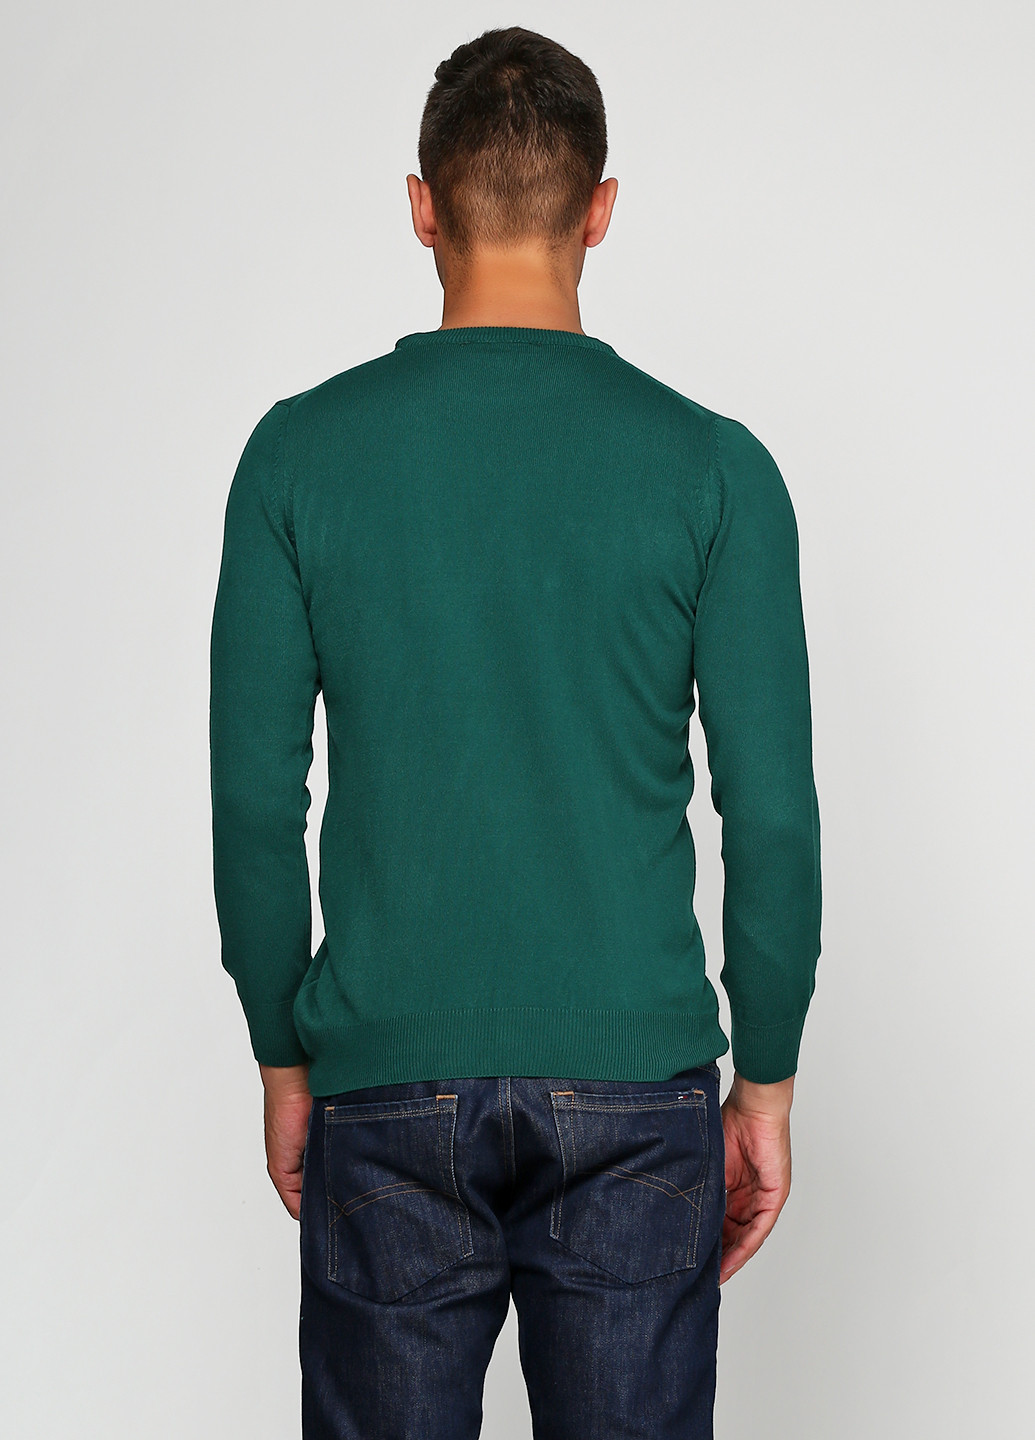 Бутылочный зеленый демисезонный джемпер джемпер Madoc Jeans